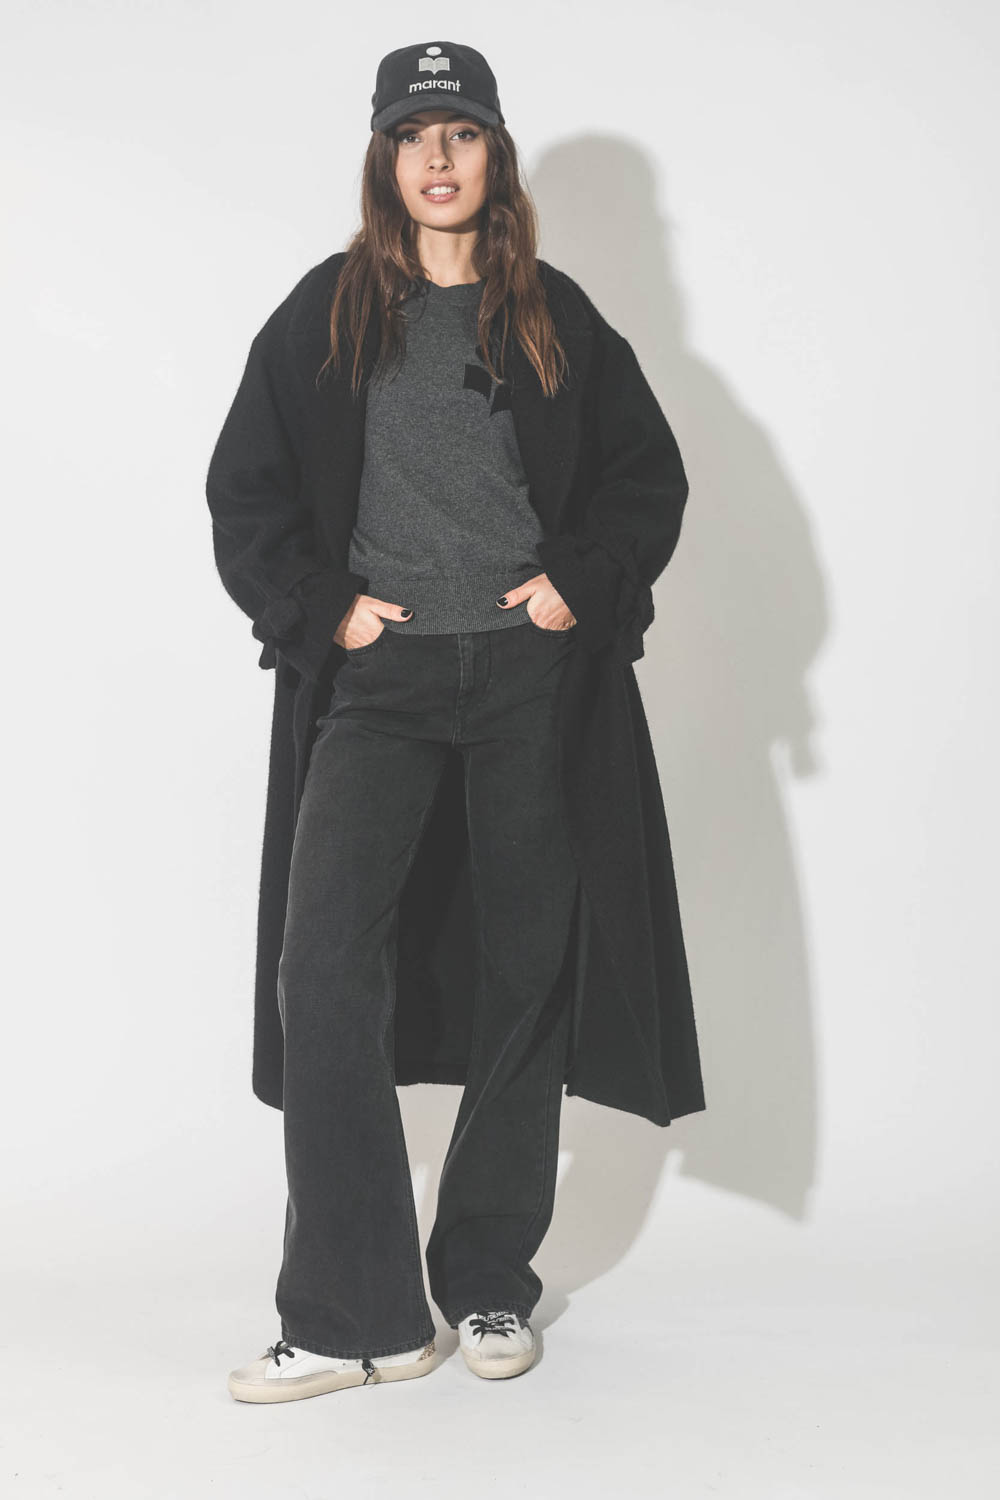 Jeans droit taille haute denim noir 100% coton non extensible Belvira Isabel Marant Etoile. Porté avec un manteau noir. 